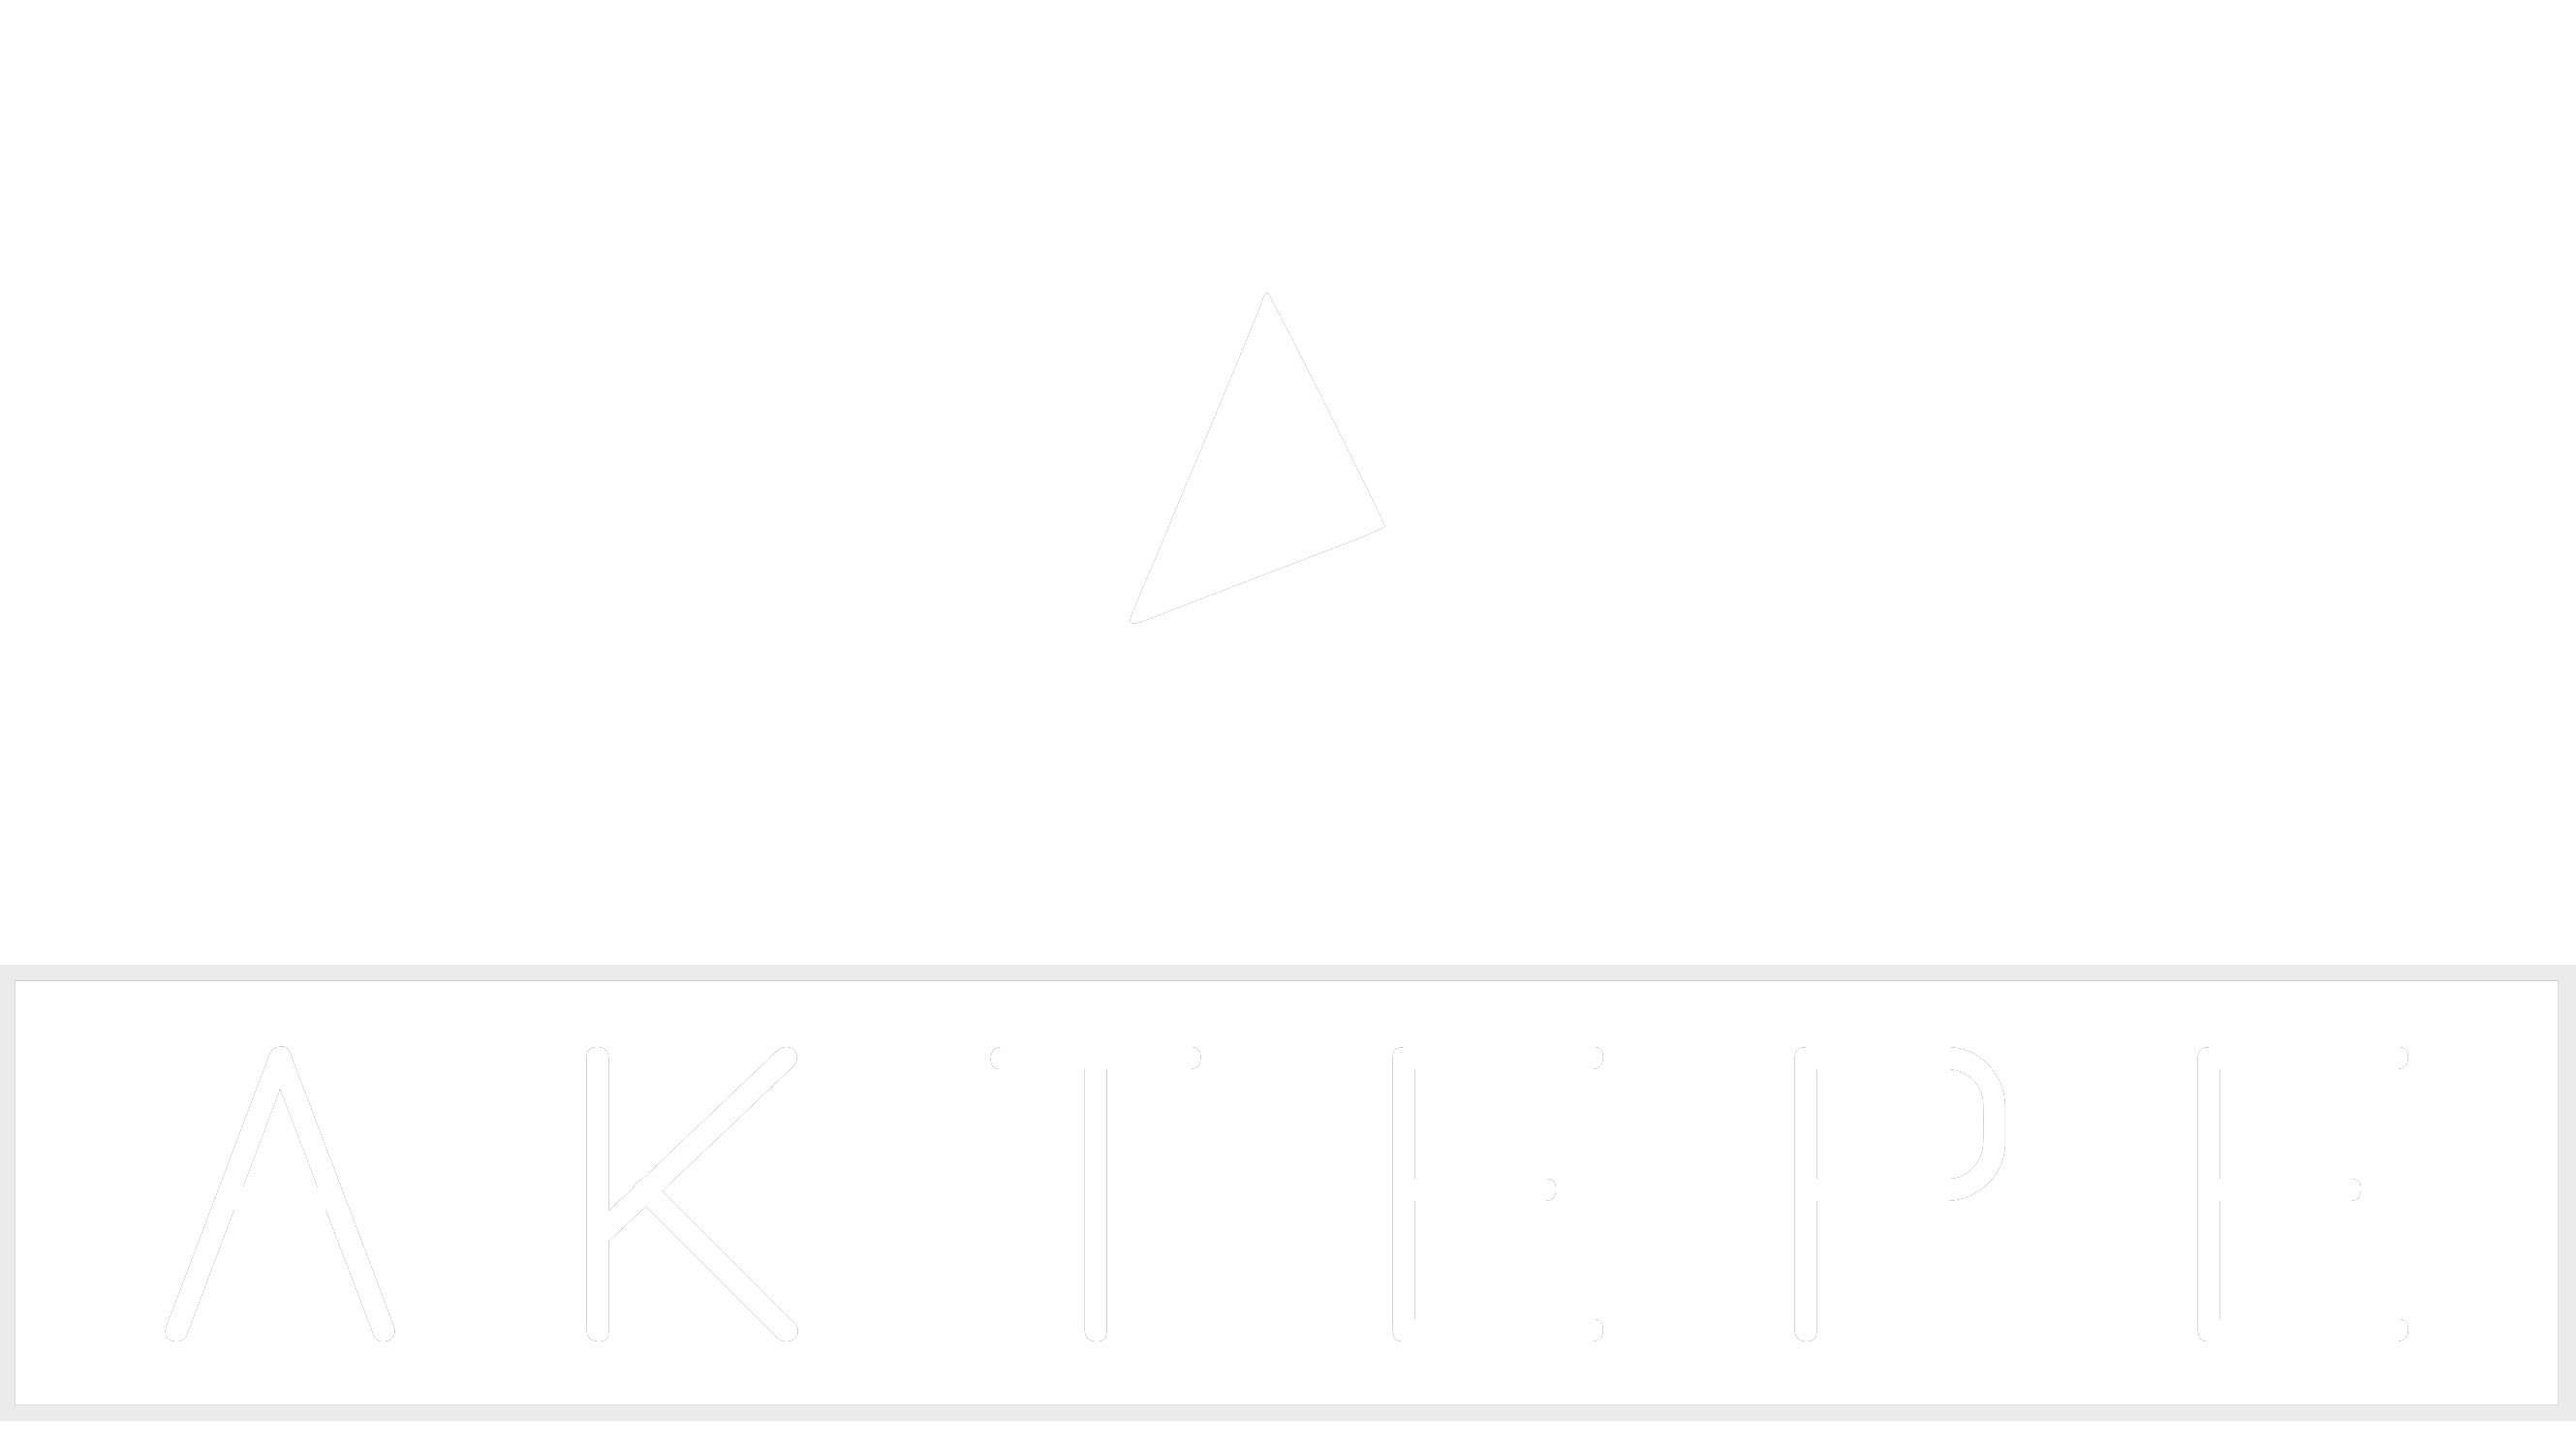 Boxster - Aktepe Shop - Oto Müzik Görüntü Navigasyon Sistemleri ve Teyp Çerçevesi Satış Merkezi